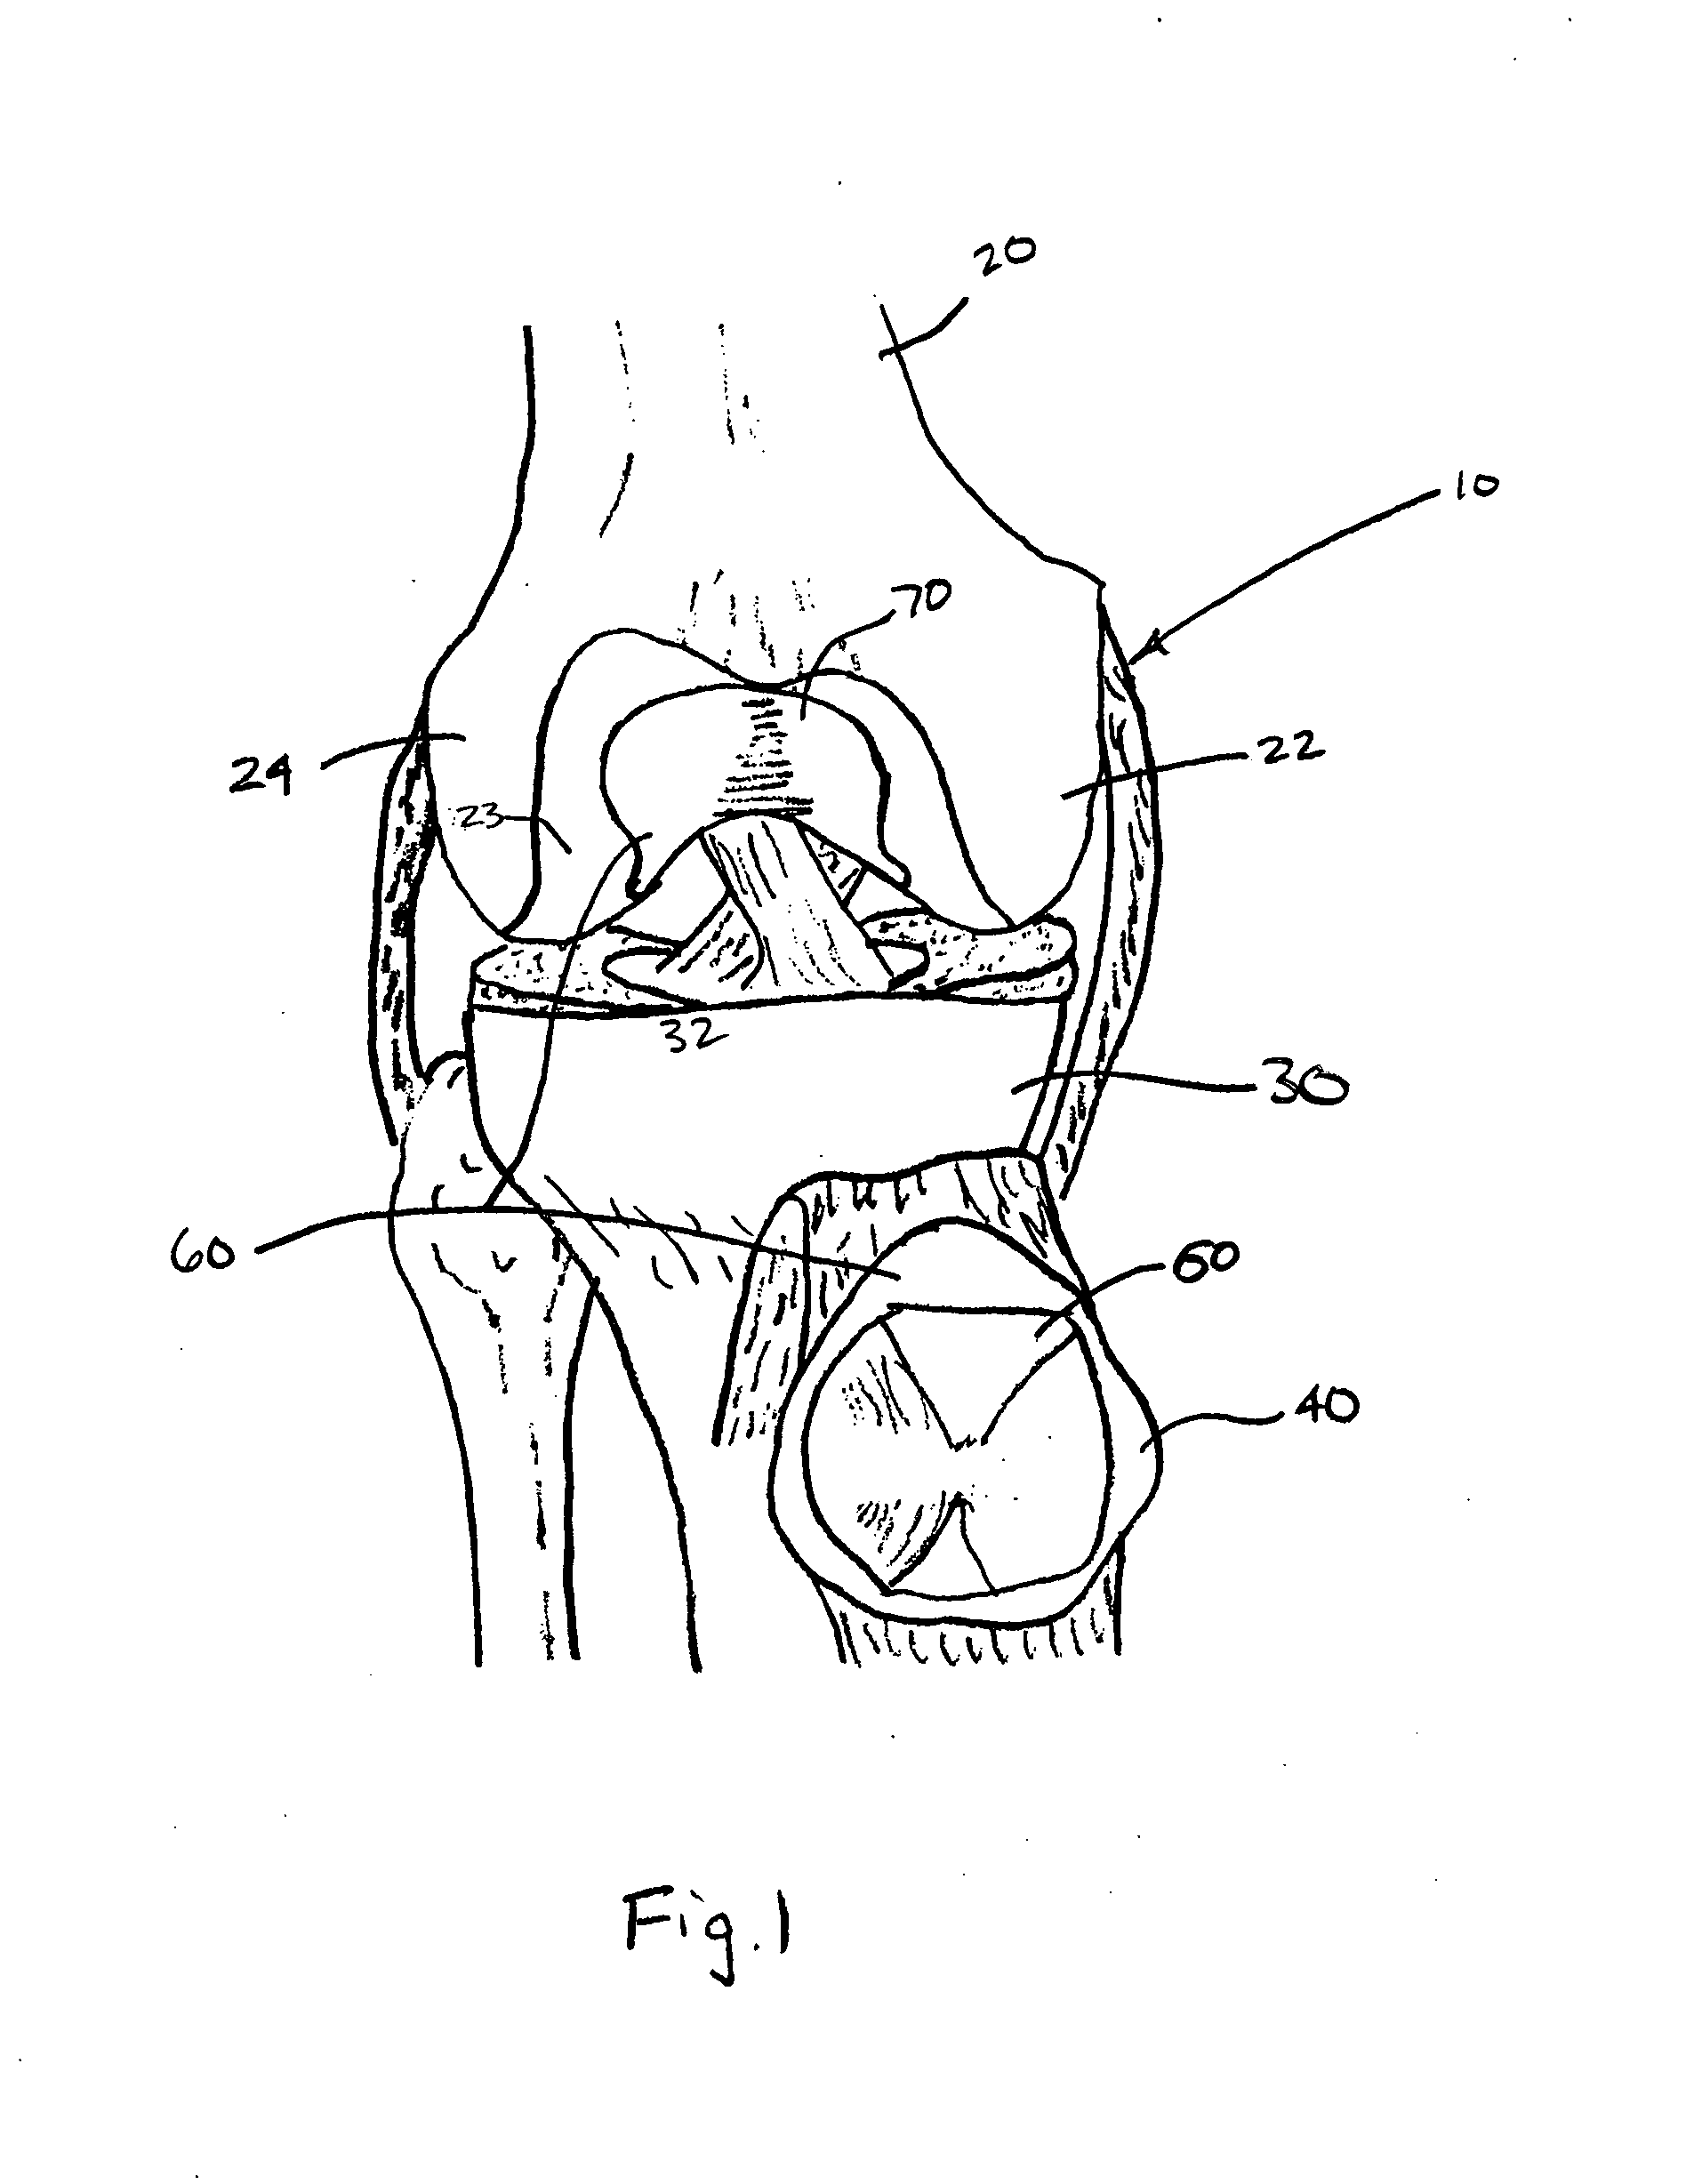 Patello-femoral prosthesis